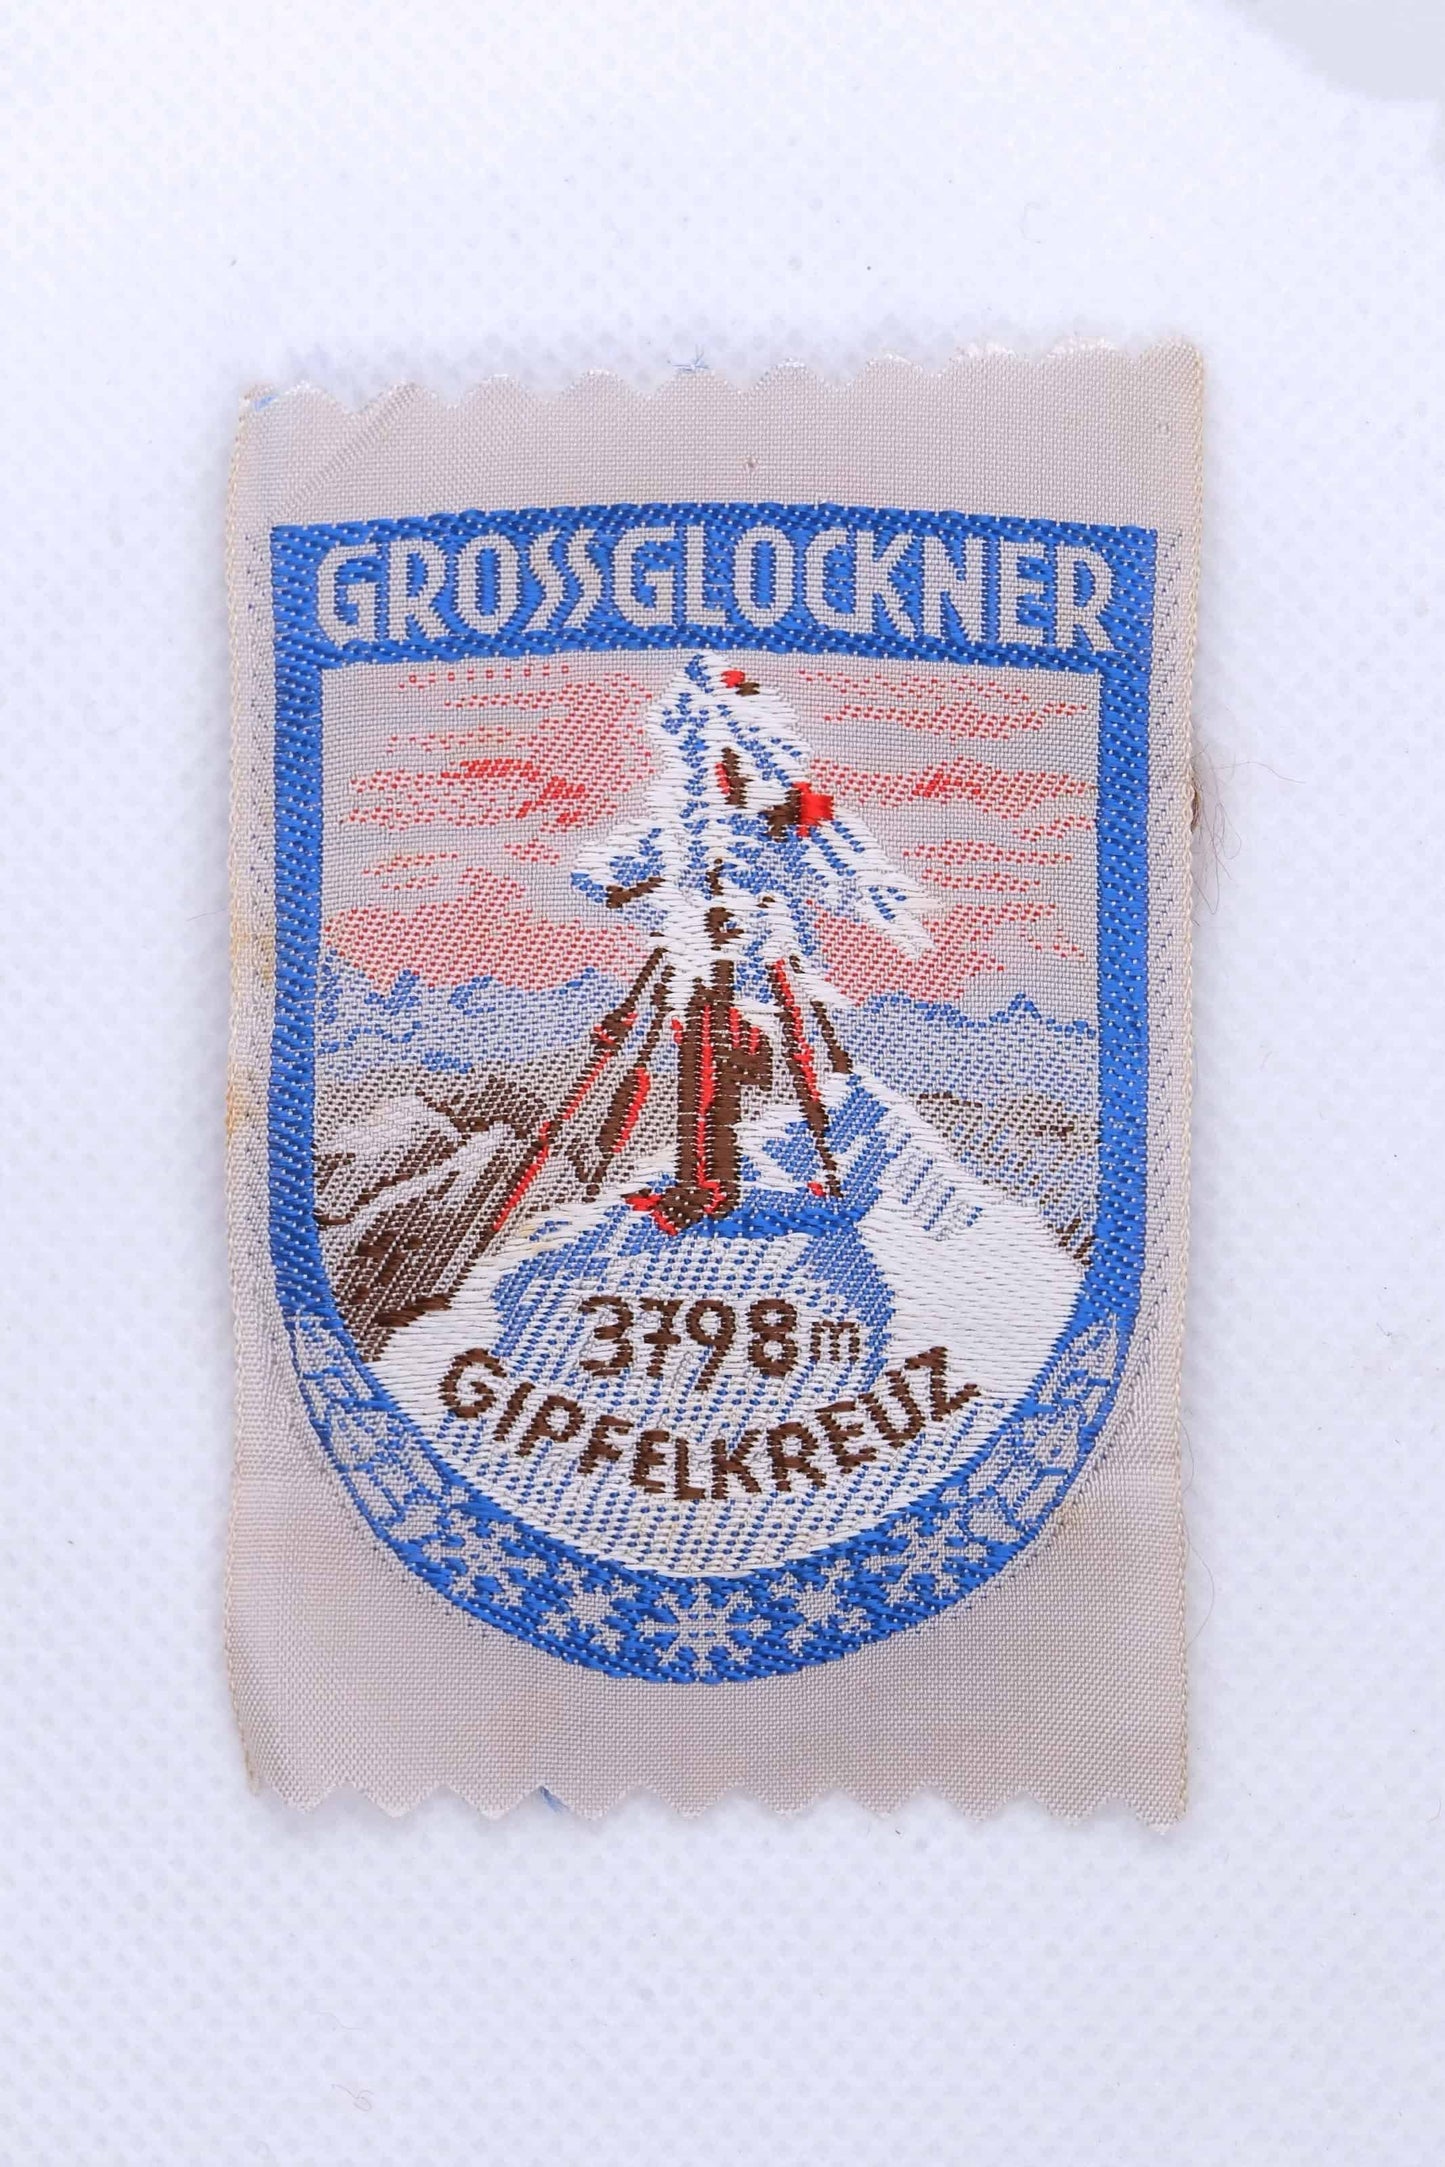 Vintage GROSSGLOCKNER AUSTRIA Embroidered Ski Patch